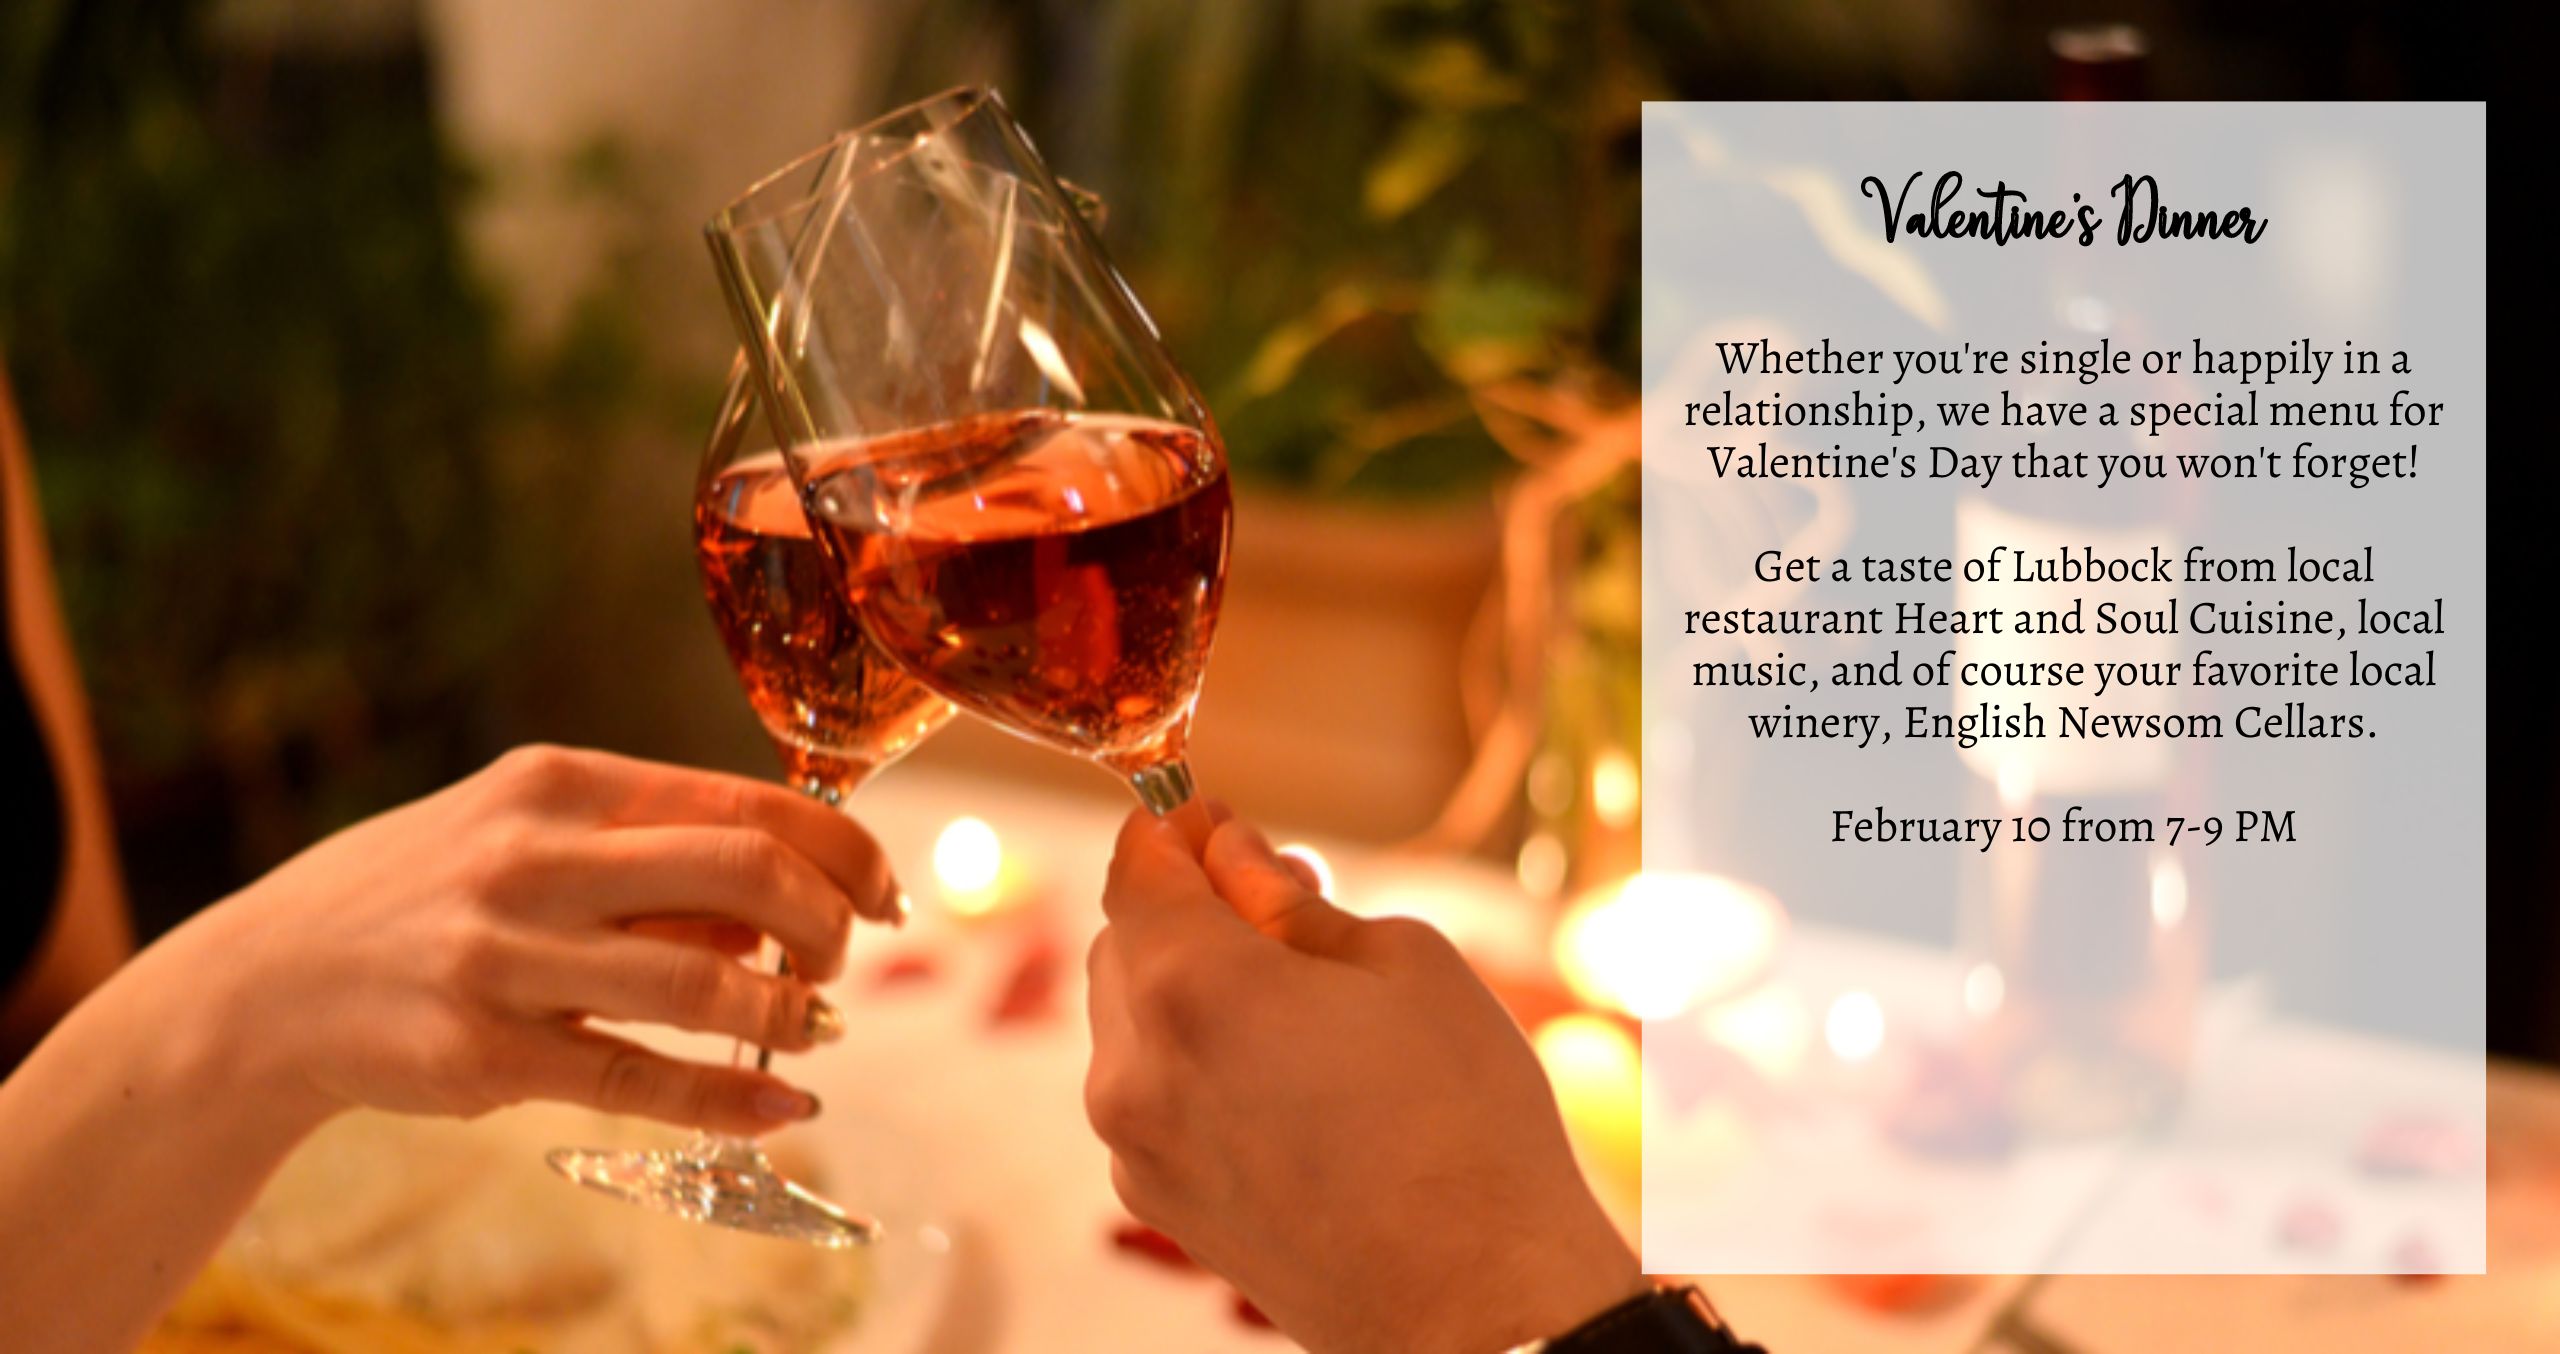 Valentine's Dinner Information